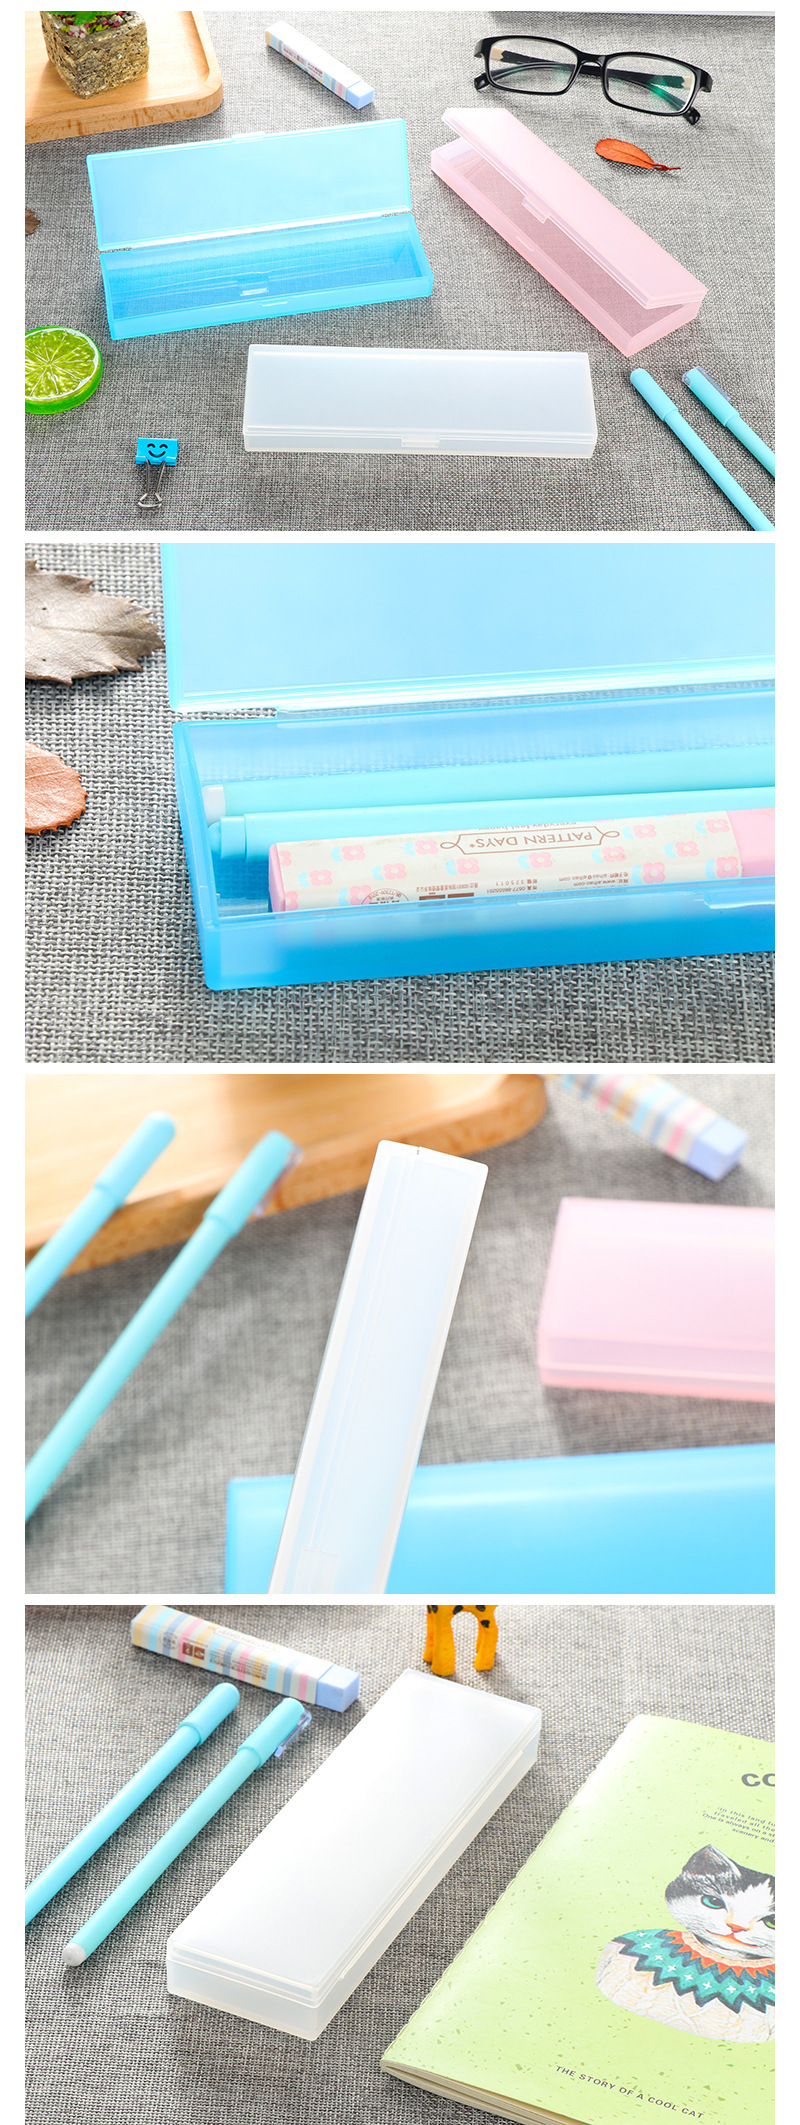 簡約風筆盒PP塑料磨砂透明鉛筆盒男女文具盒正品